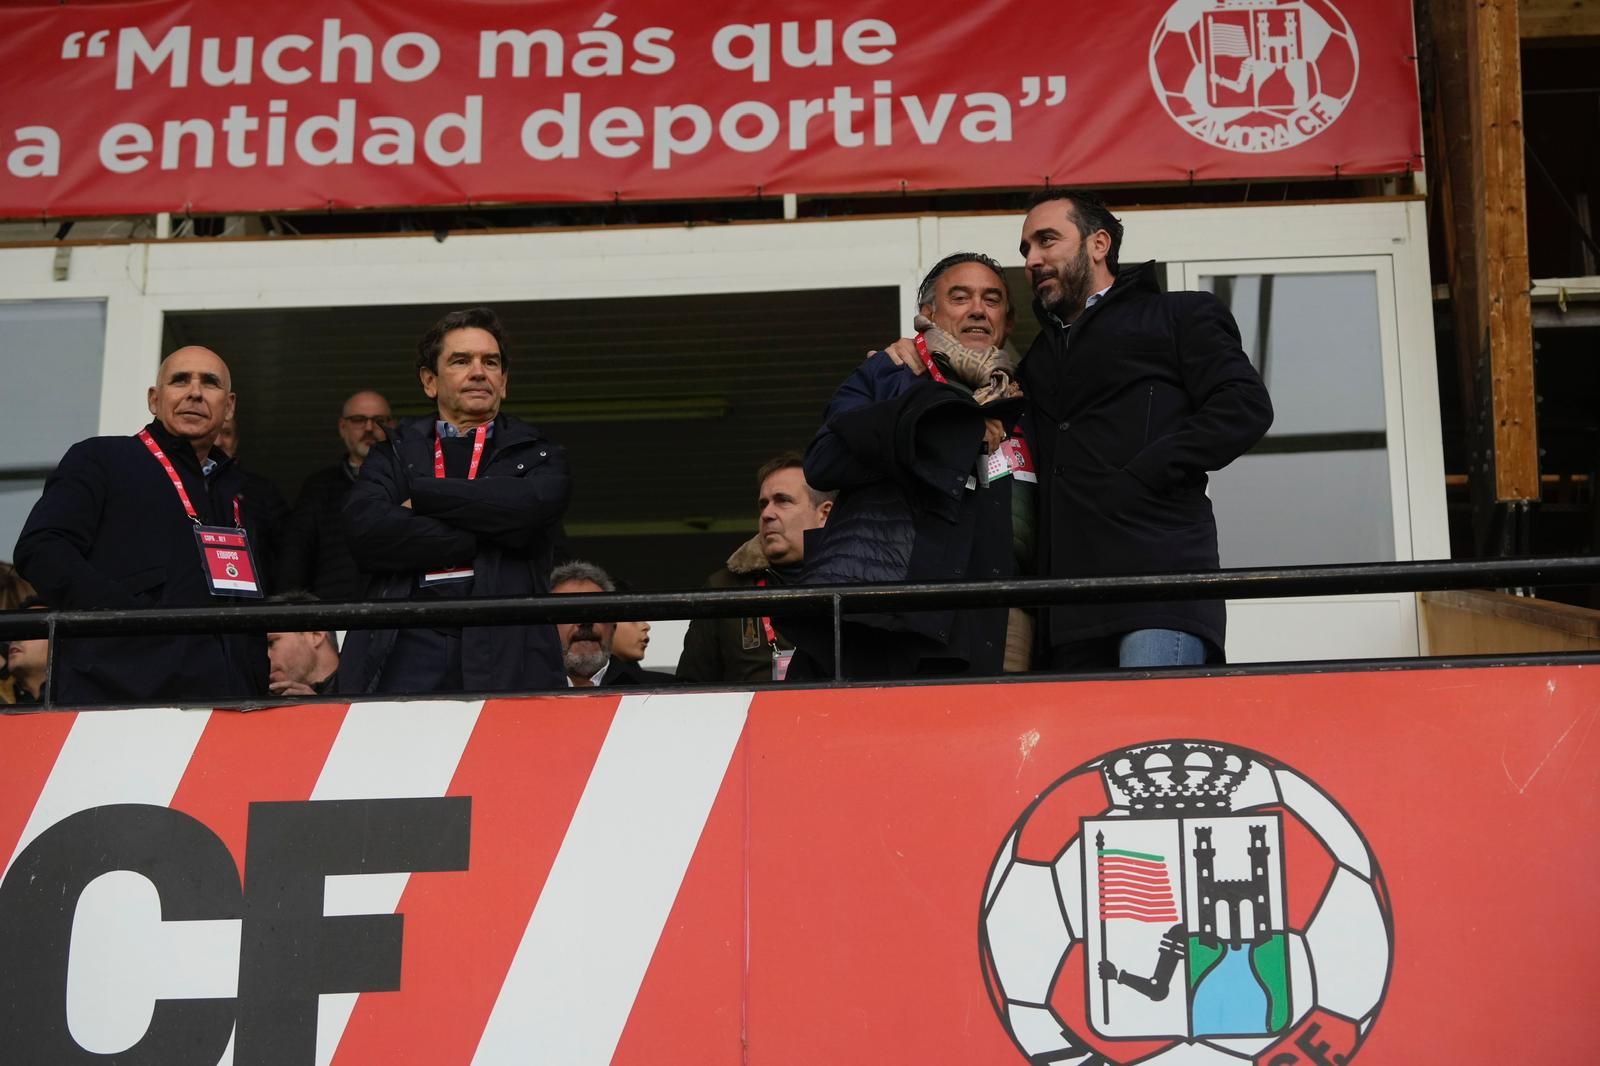 Partido de Copa del Rey entre el Zamora CF y el Racing de Santander en el Ruta de la Plata